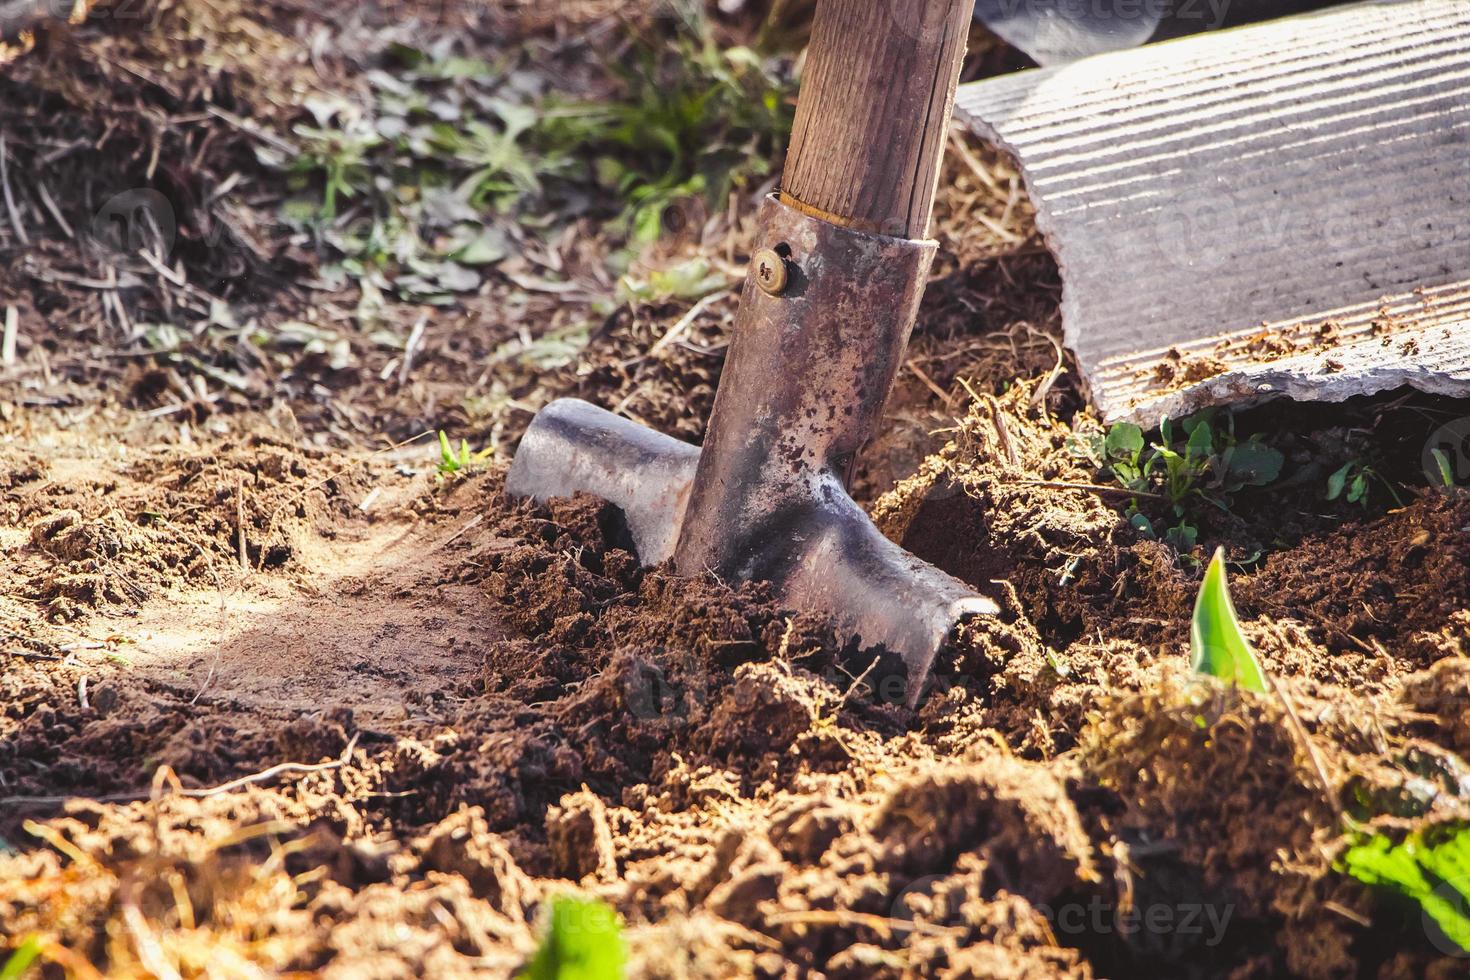 scavare la terra con la pala a mano. giardinaggio e piantare semi in primavera. vita rurale, agricoltura. foto